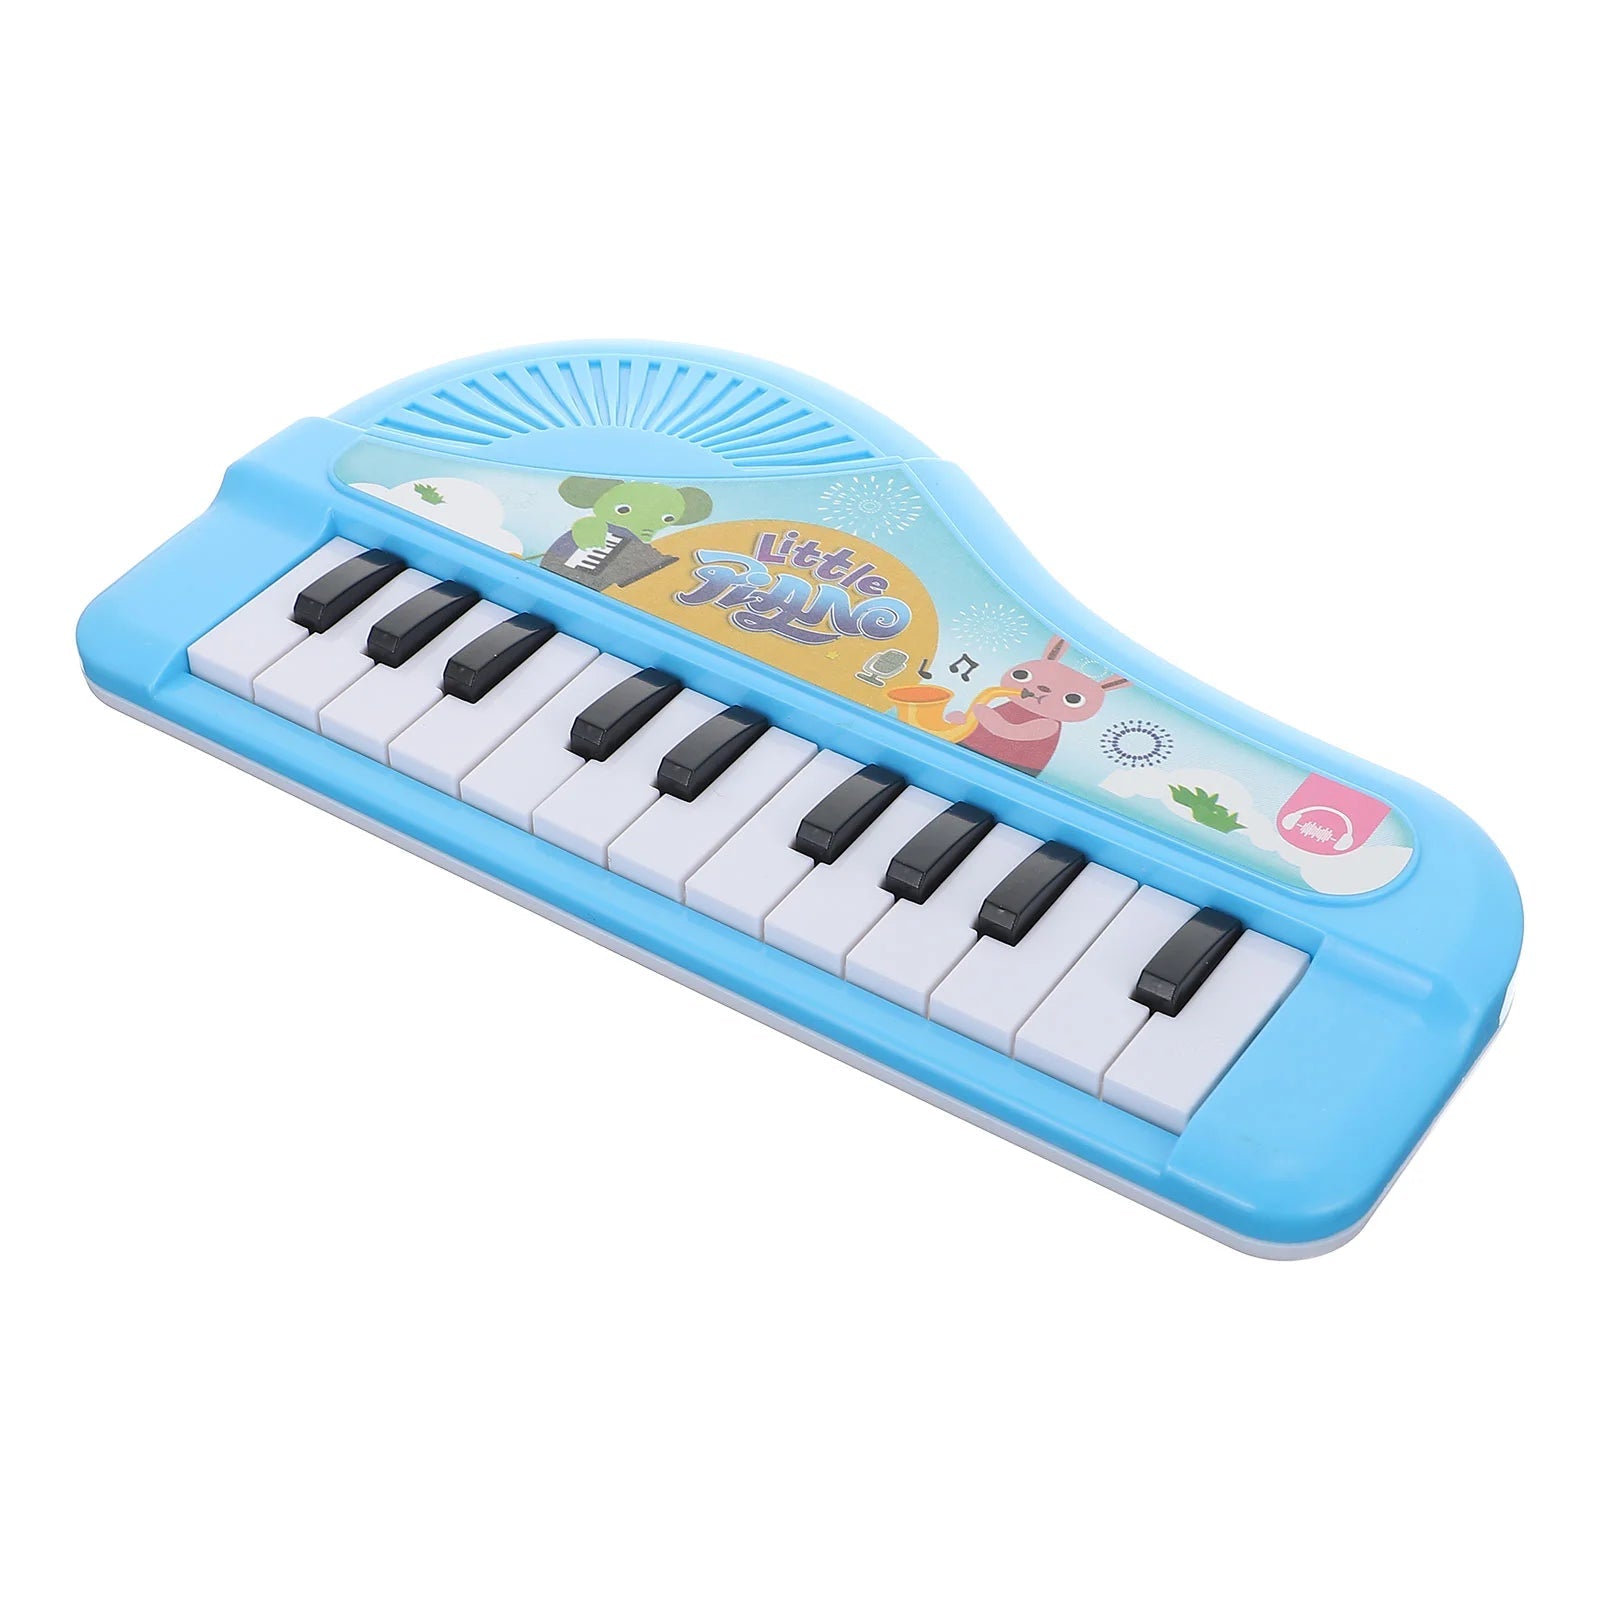 Musical Instruments Toddlers 1- 3 Electronic Organ Toys Keyboard - ToylandEU